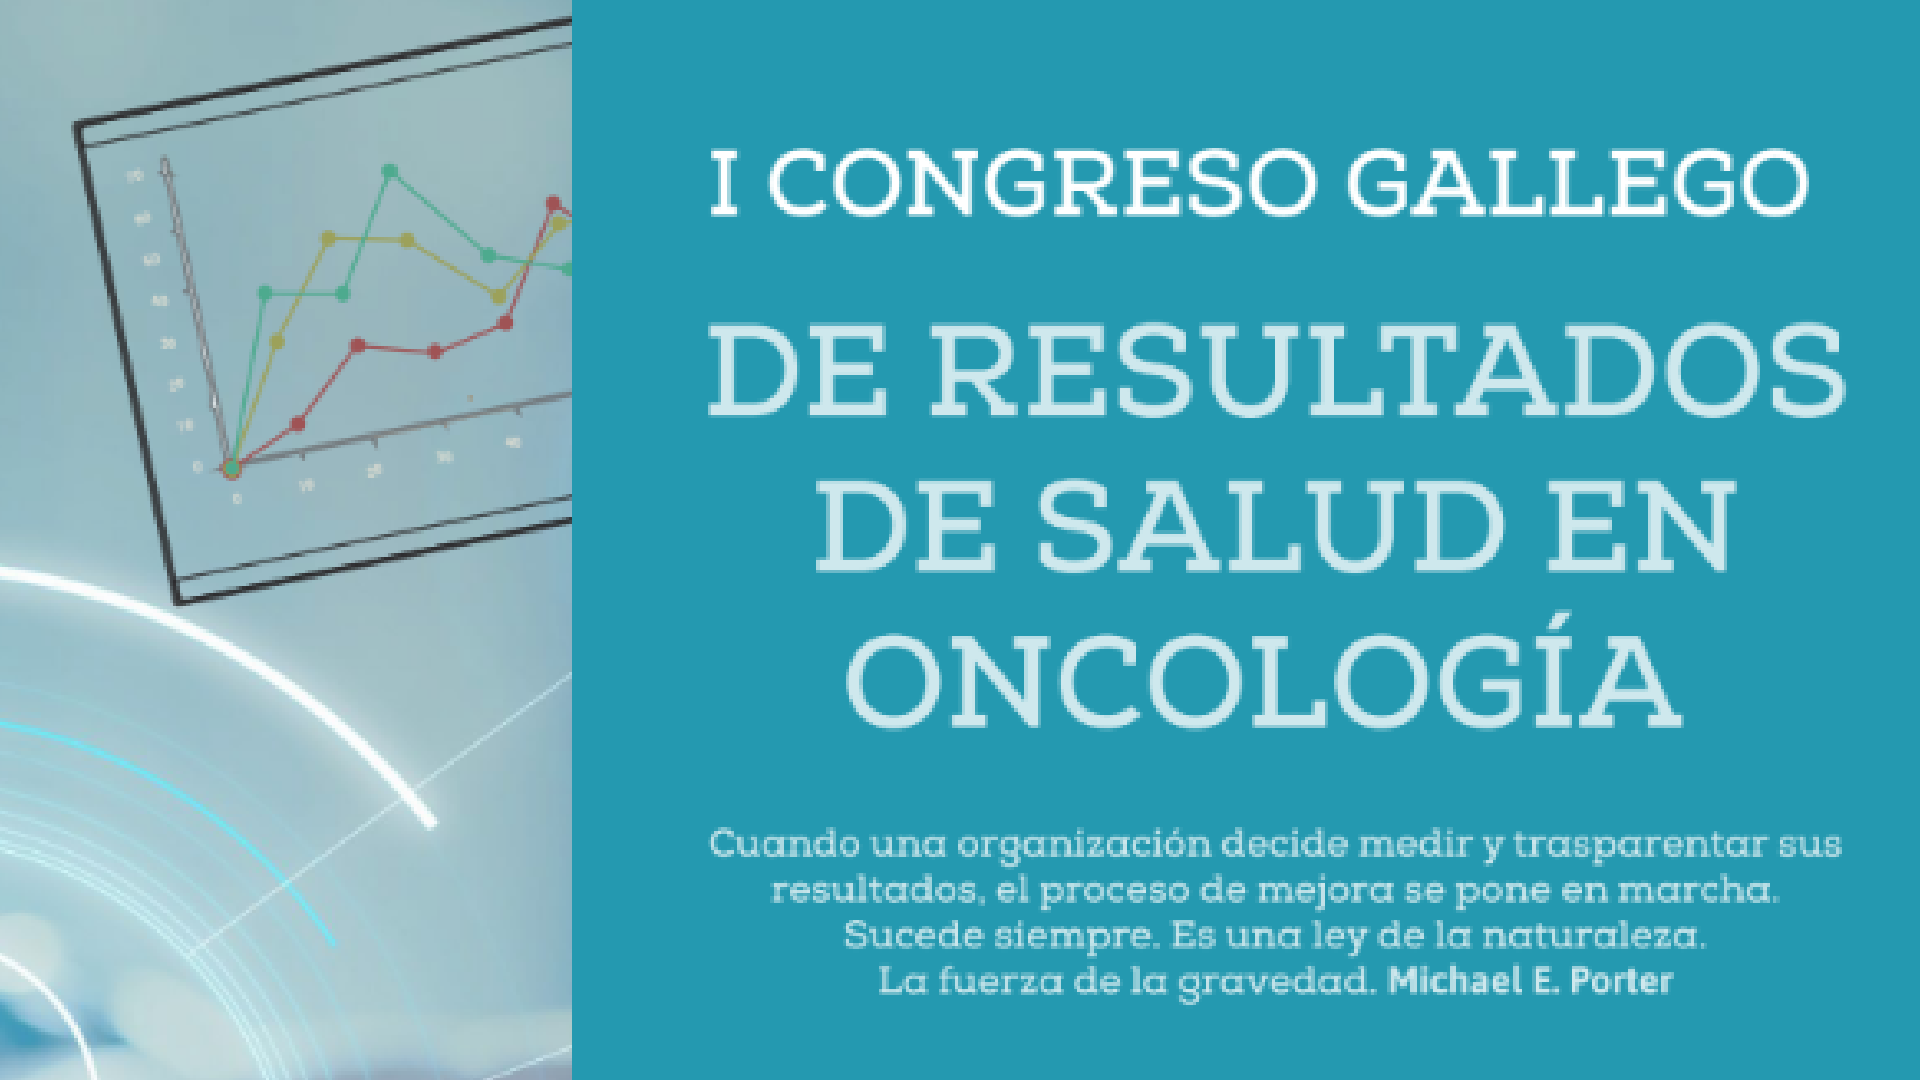 I Congreso Gallego de Resultados de Salud en Oncología